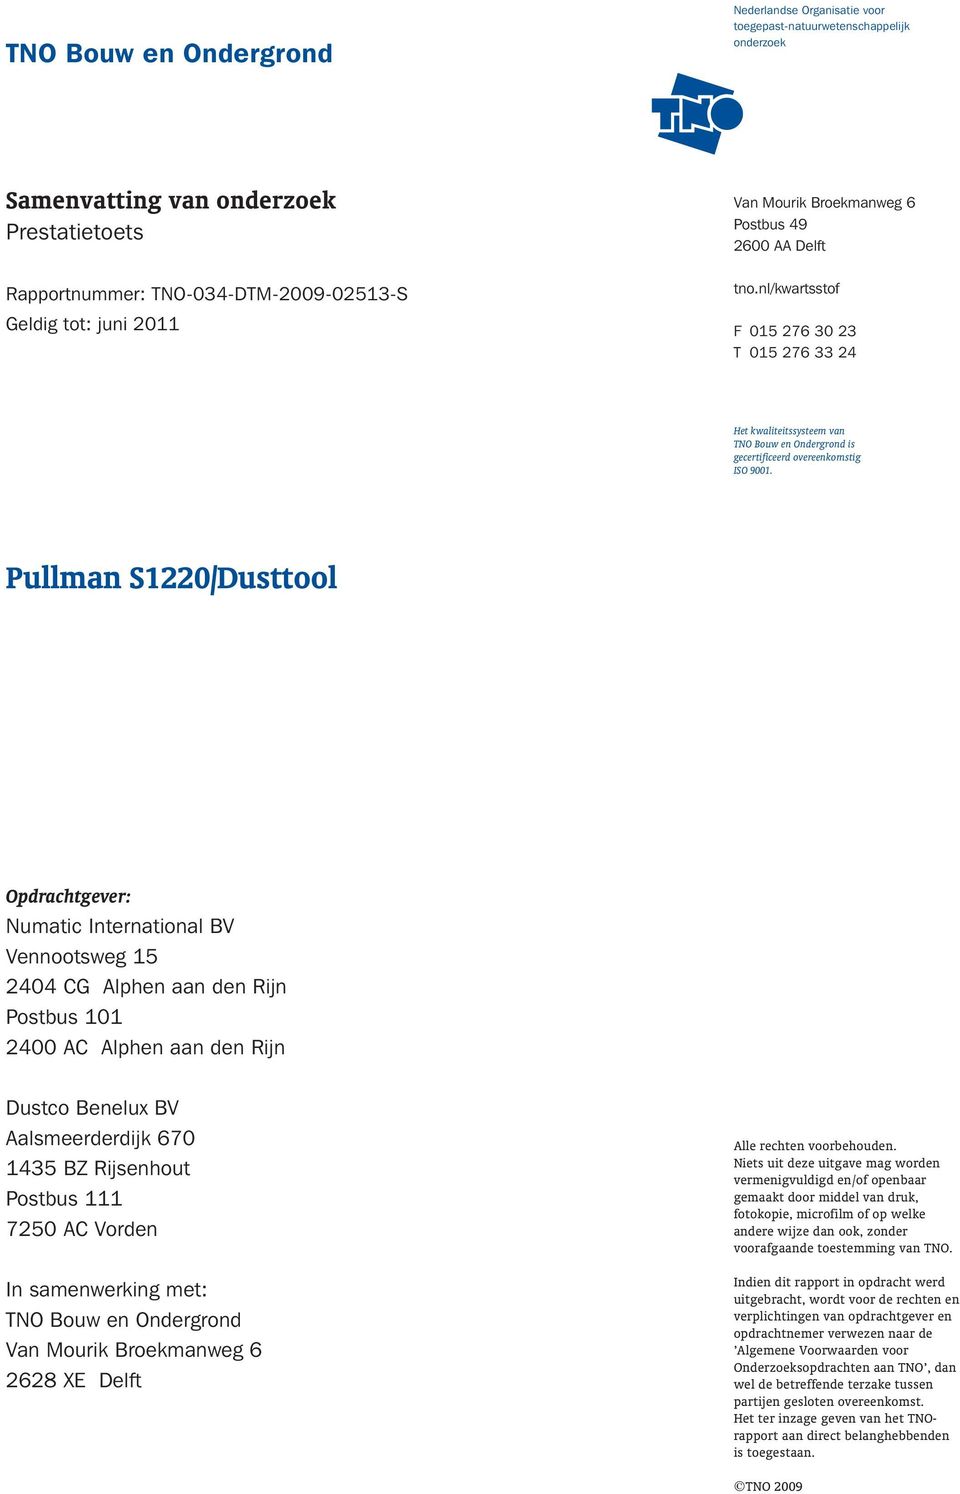 Pullman S1220/Dusttool Opdrachtgever: Numatic International BV Vennootsweg 15 2404 CG Alphen aan den Rijn Postbus 101 2400 AC Alphen aan den Rijn Dustco Benelux BV Aalsmeerderdijk 670 1435 BZ